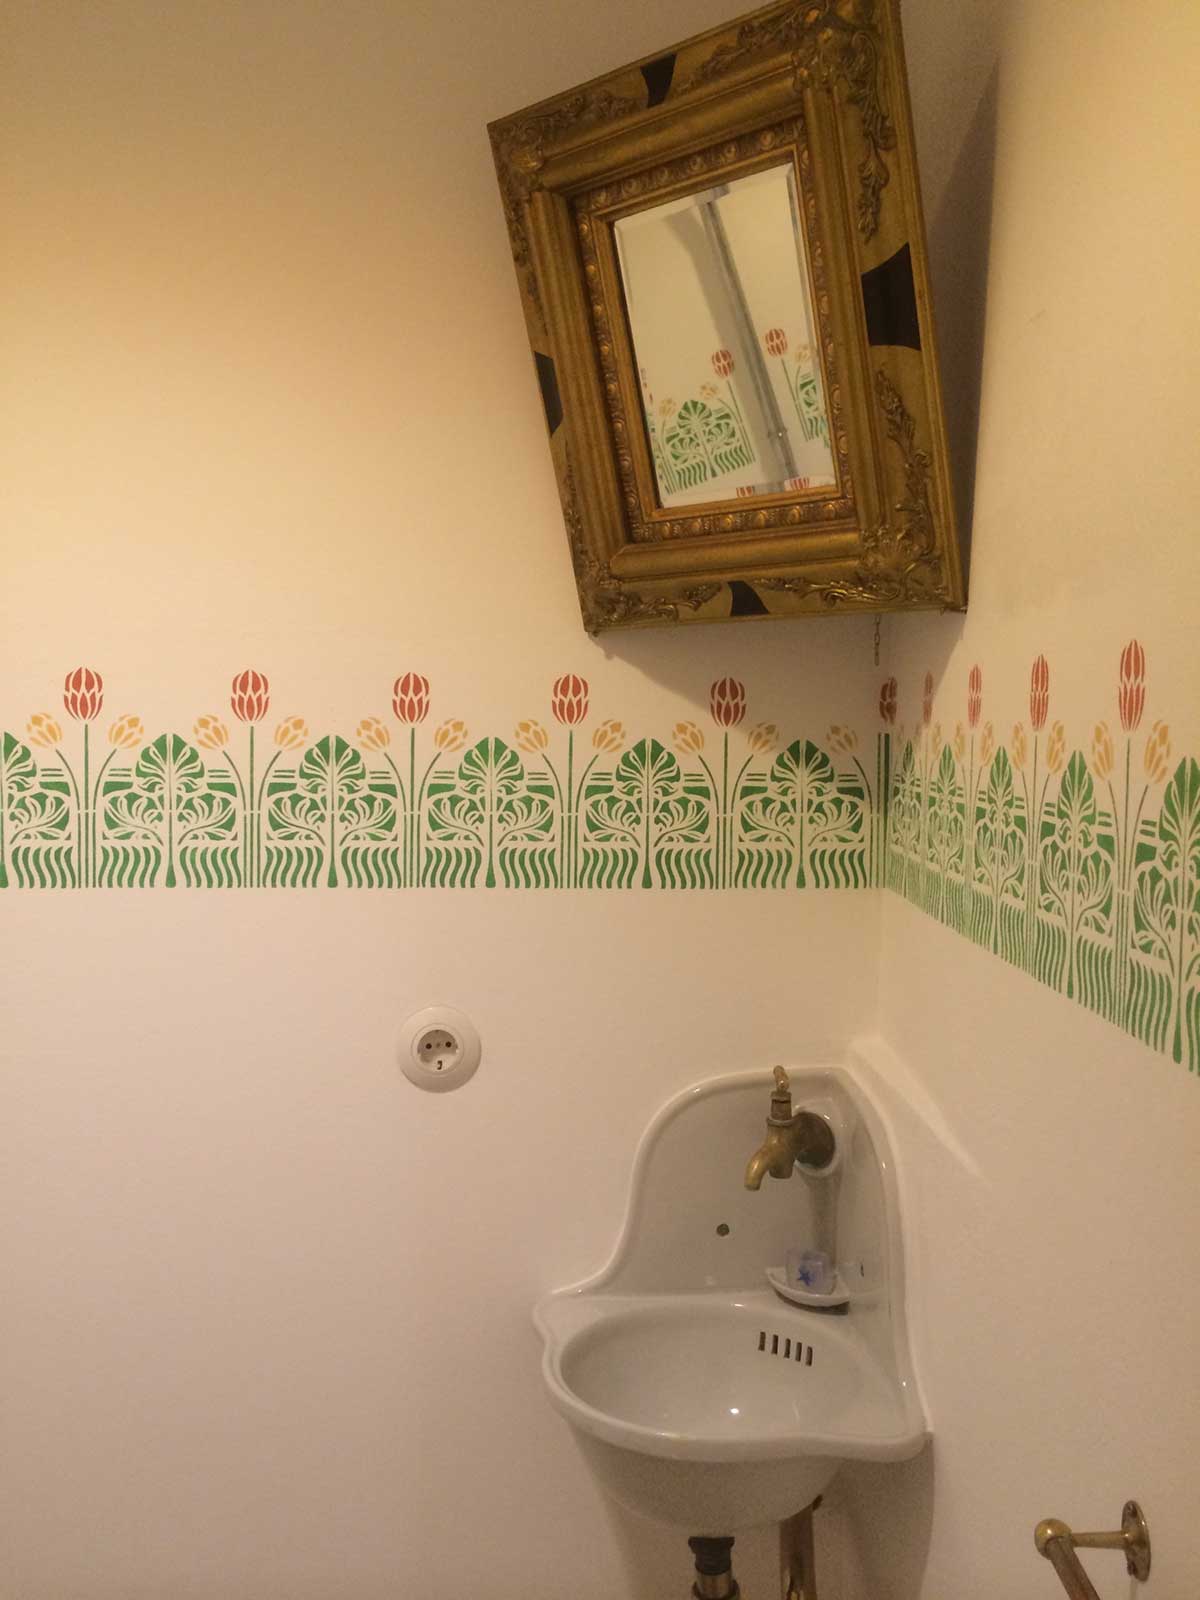 Badezimmer Sanierung, Borte mit Schablone erstellt